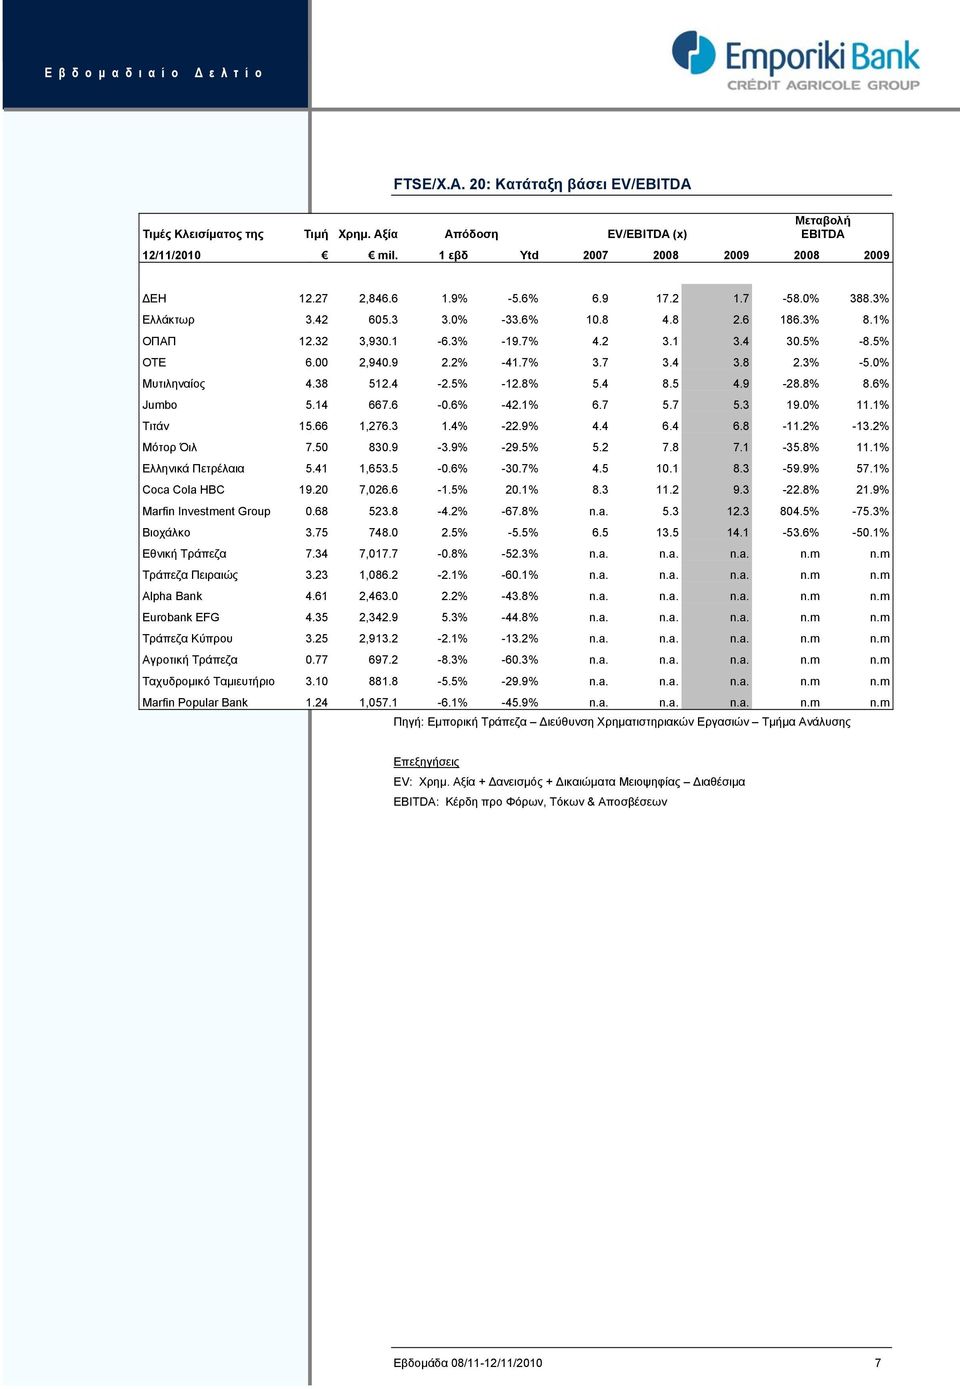 0% Μυτιληναίος 4.38 512.4-2.5% -12.8% 5.4 8.5 4.9-28.8% 8.6% Jumbo 5.14 667.6-0.6% -42.1% 6.7 5.7 5.3 19.0% 11.1% Τιτάν 15.66 1,276.3 1.4% -22.9% 4.4 6.4 6.8-11.2% -13.2% Μότορ Όιλ 7.50 830.9-3.